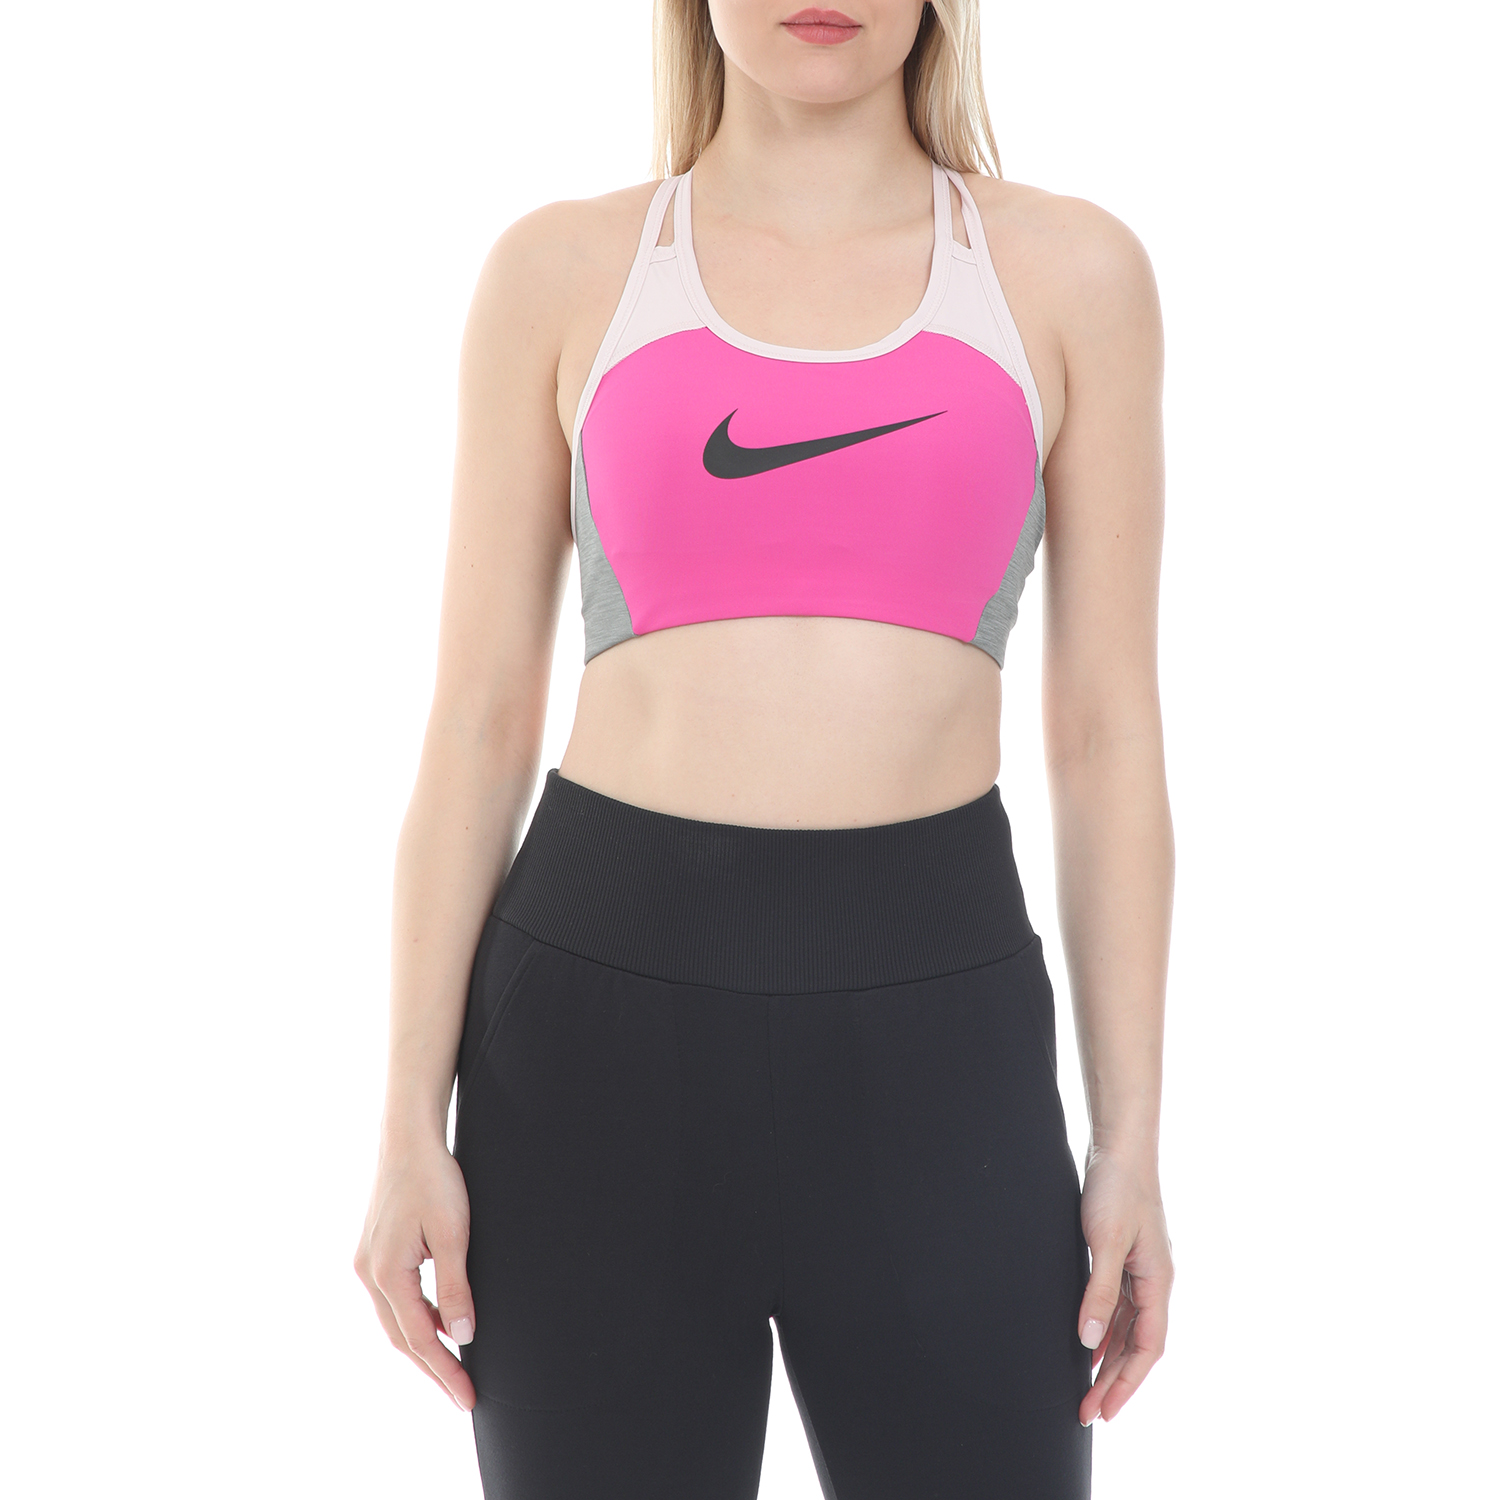 Γυναικεία/Ρούχα/Αθλητικά/Μπουστάκια NIKE - Γυναικείο αθλητικό μπουστάκι NIKE SWOOSH LOGO BRA PAD ροζ γκρι